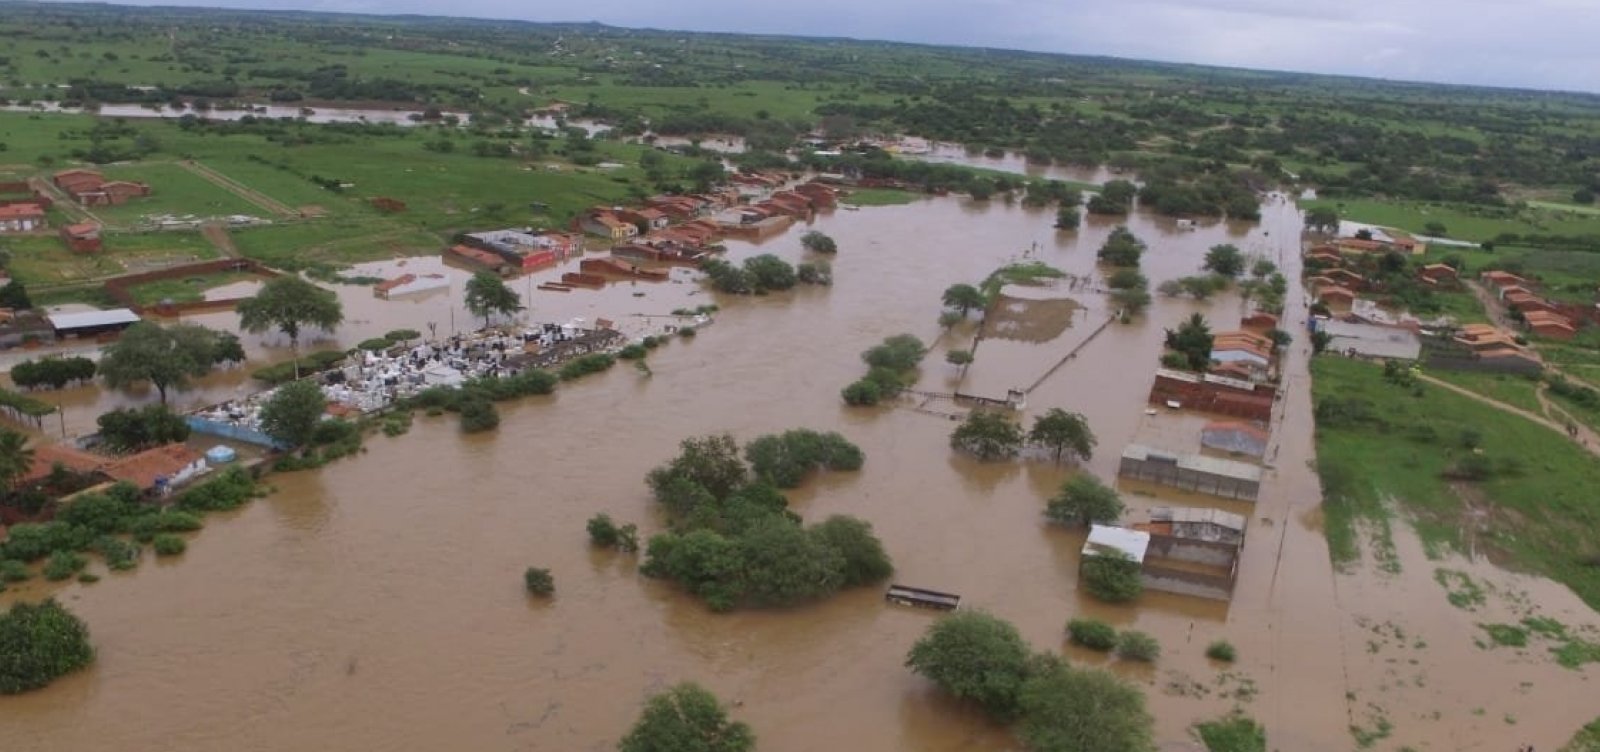 Após inundação, Coronel João Sá receberá R$ 265 mil como ajuda humanitária da União